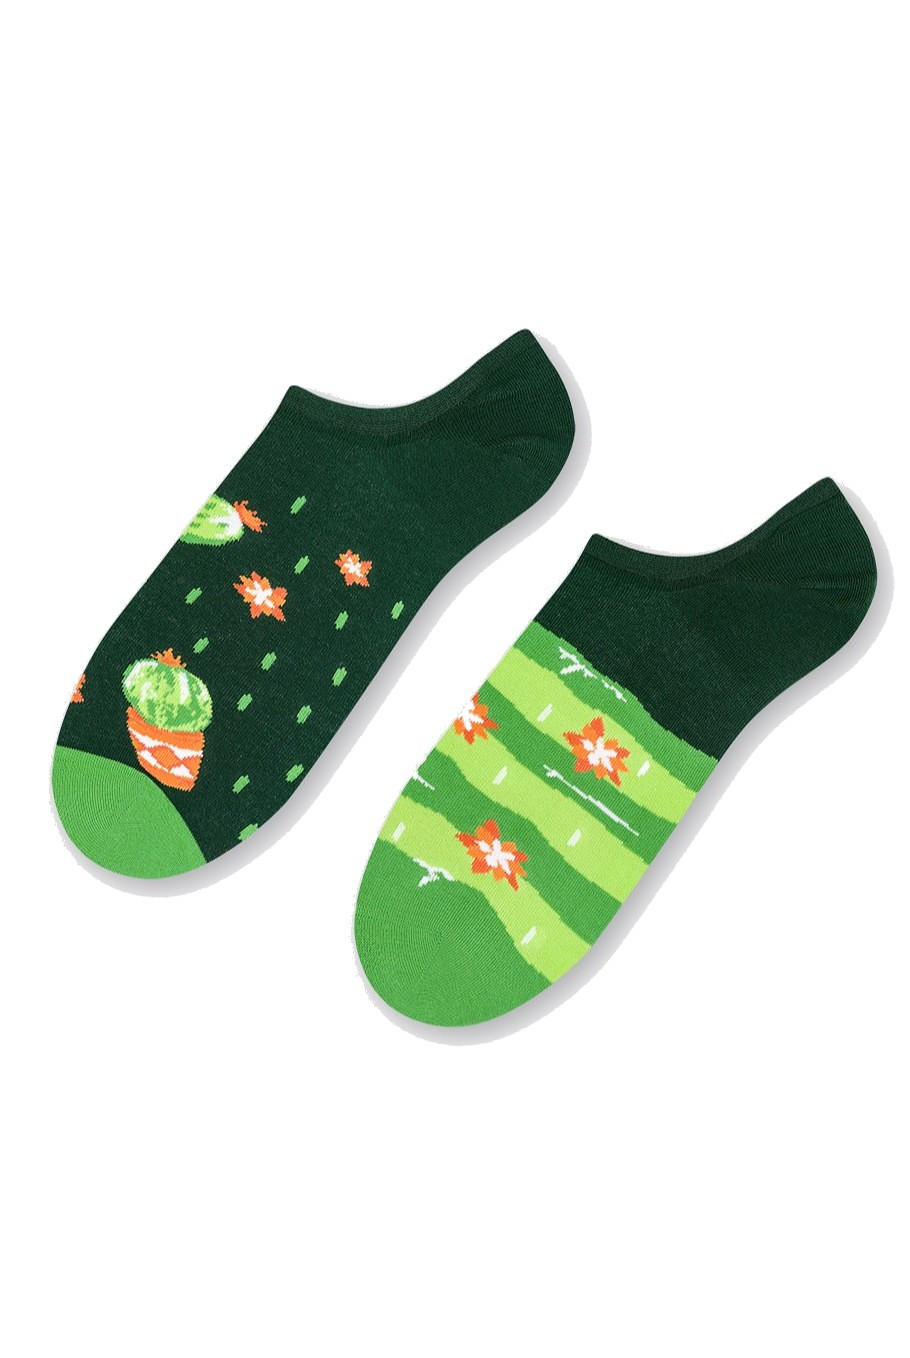 Asymetrické pánské ponožky ťapky More 009 tmavě zelená 43-46